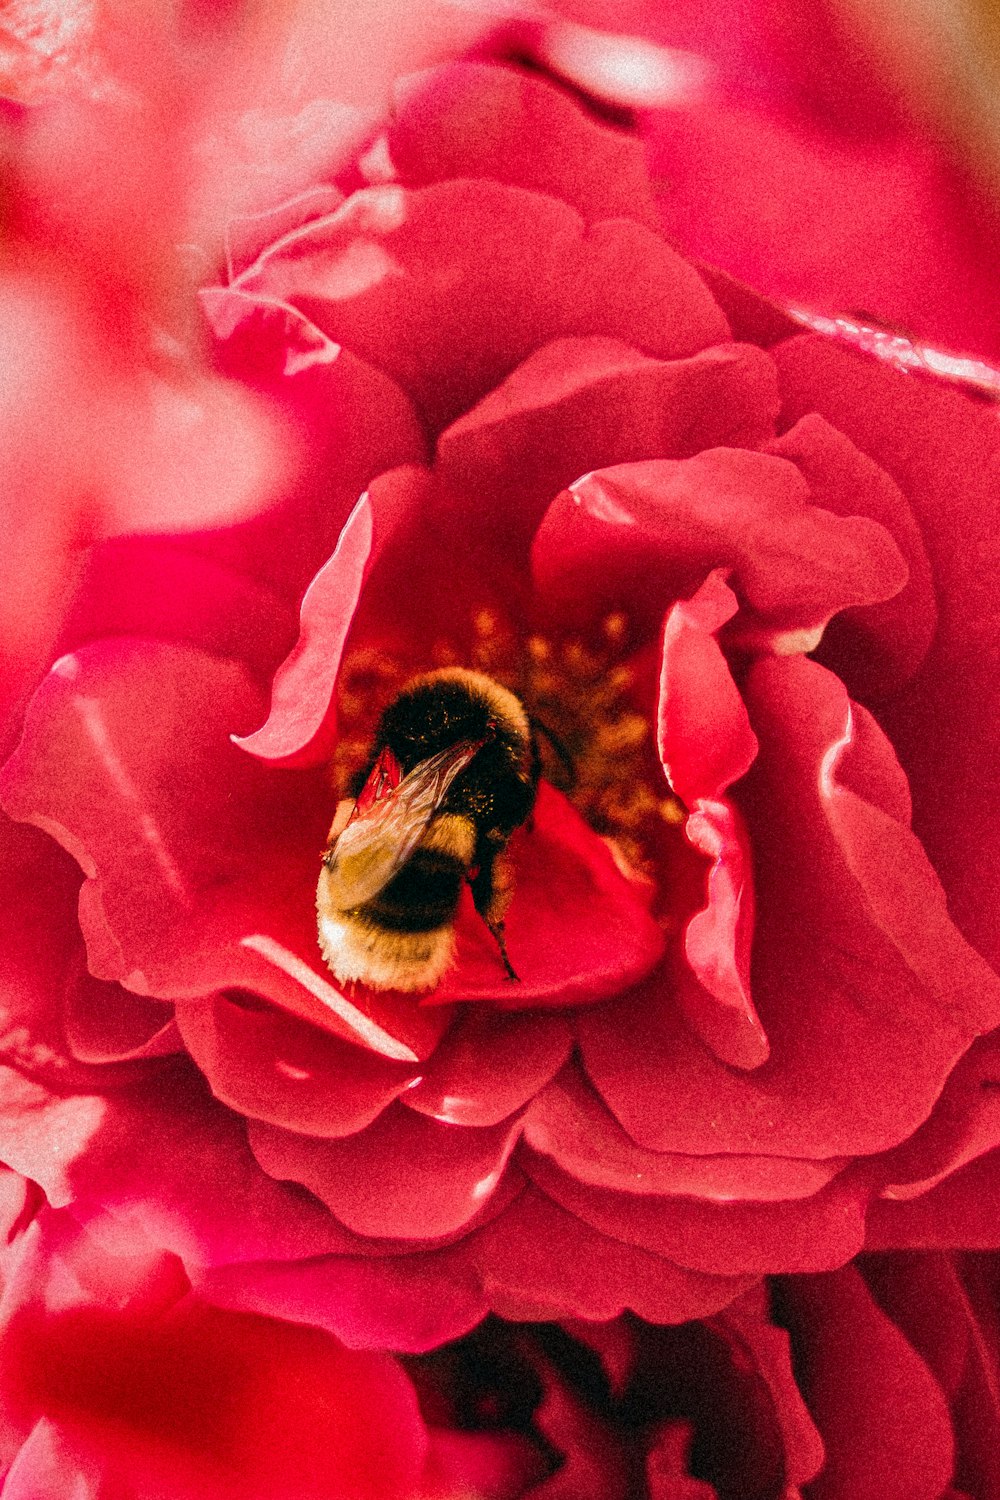 Schwarze und gelbe Biene auf rosa Blume